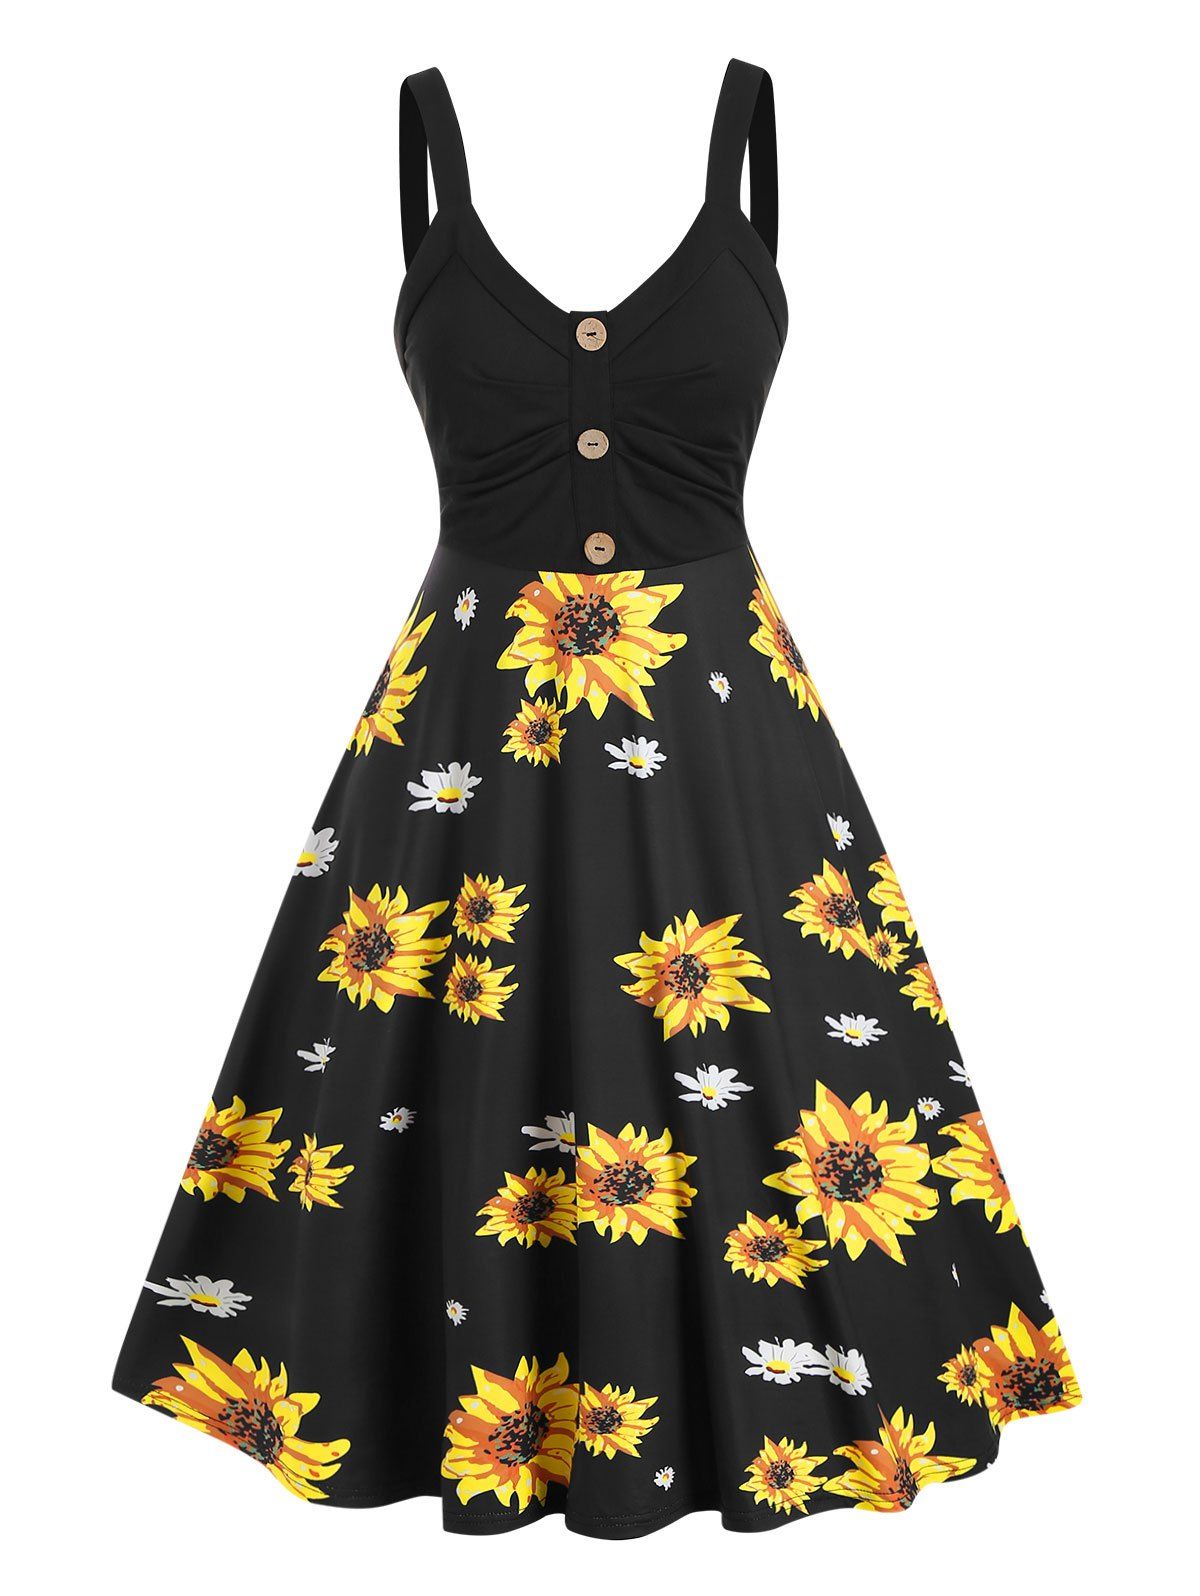 Summer Sunflower Print Sundress Mock Button High Waist Cami Dress - multicolor L